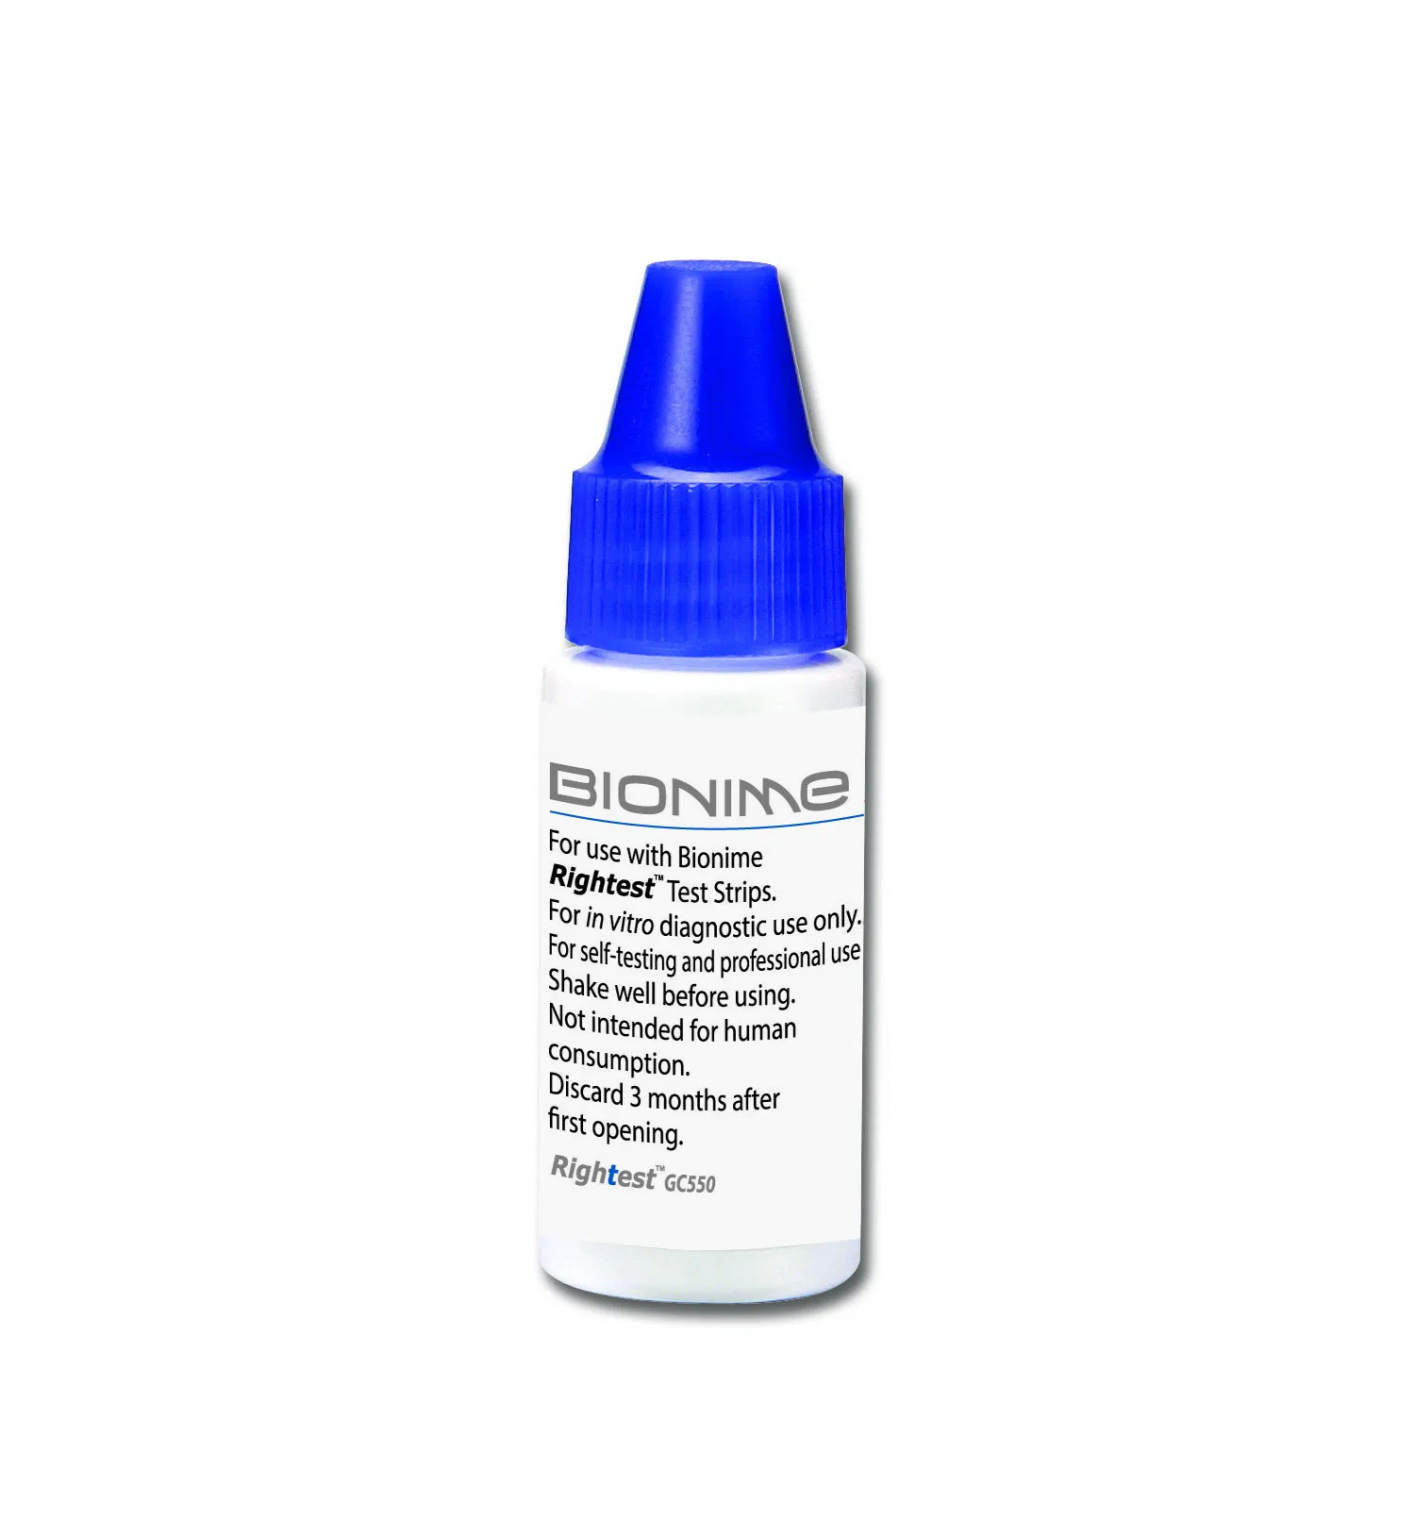 Глюкометр Биониме как заменить иголку. Dowfax™ 2a1 solution surfactant. Control solution